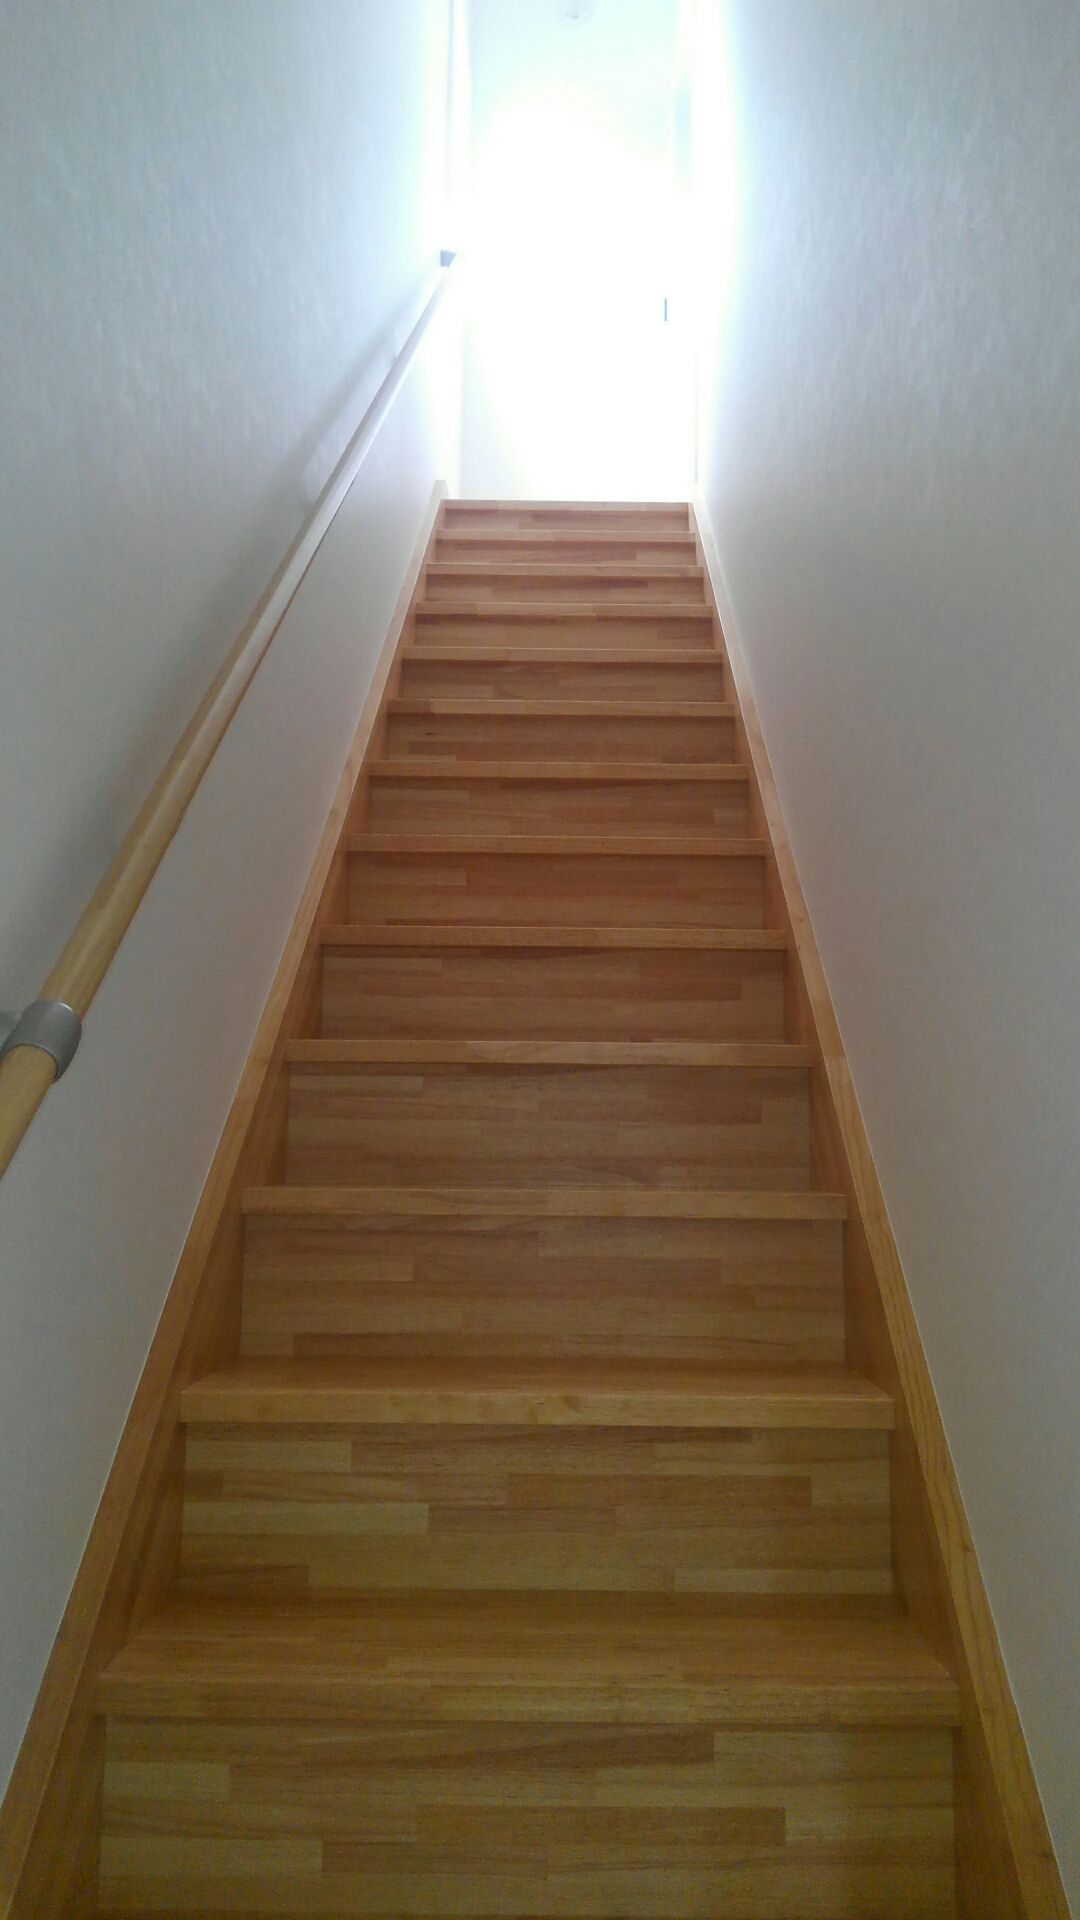 ホビールームから2階へと上がるてっぽう階段（一直線で上がる階段のことです）日差しを浴び、2階のホールが輝いて、なにかイイことがおこりそうな階段ですね。